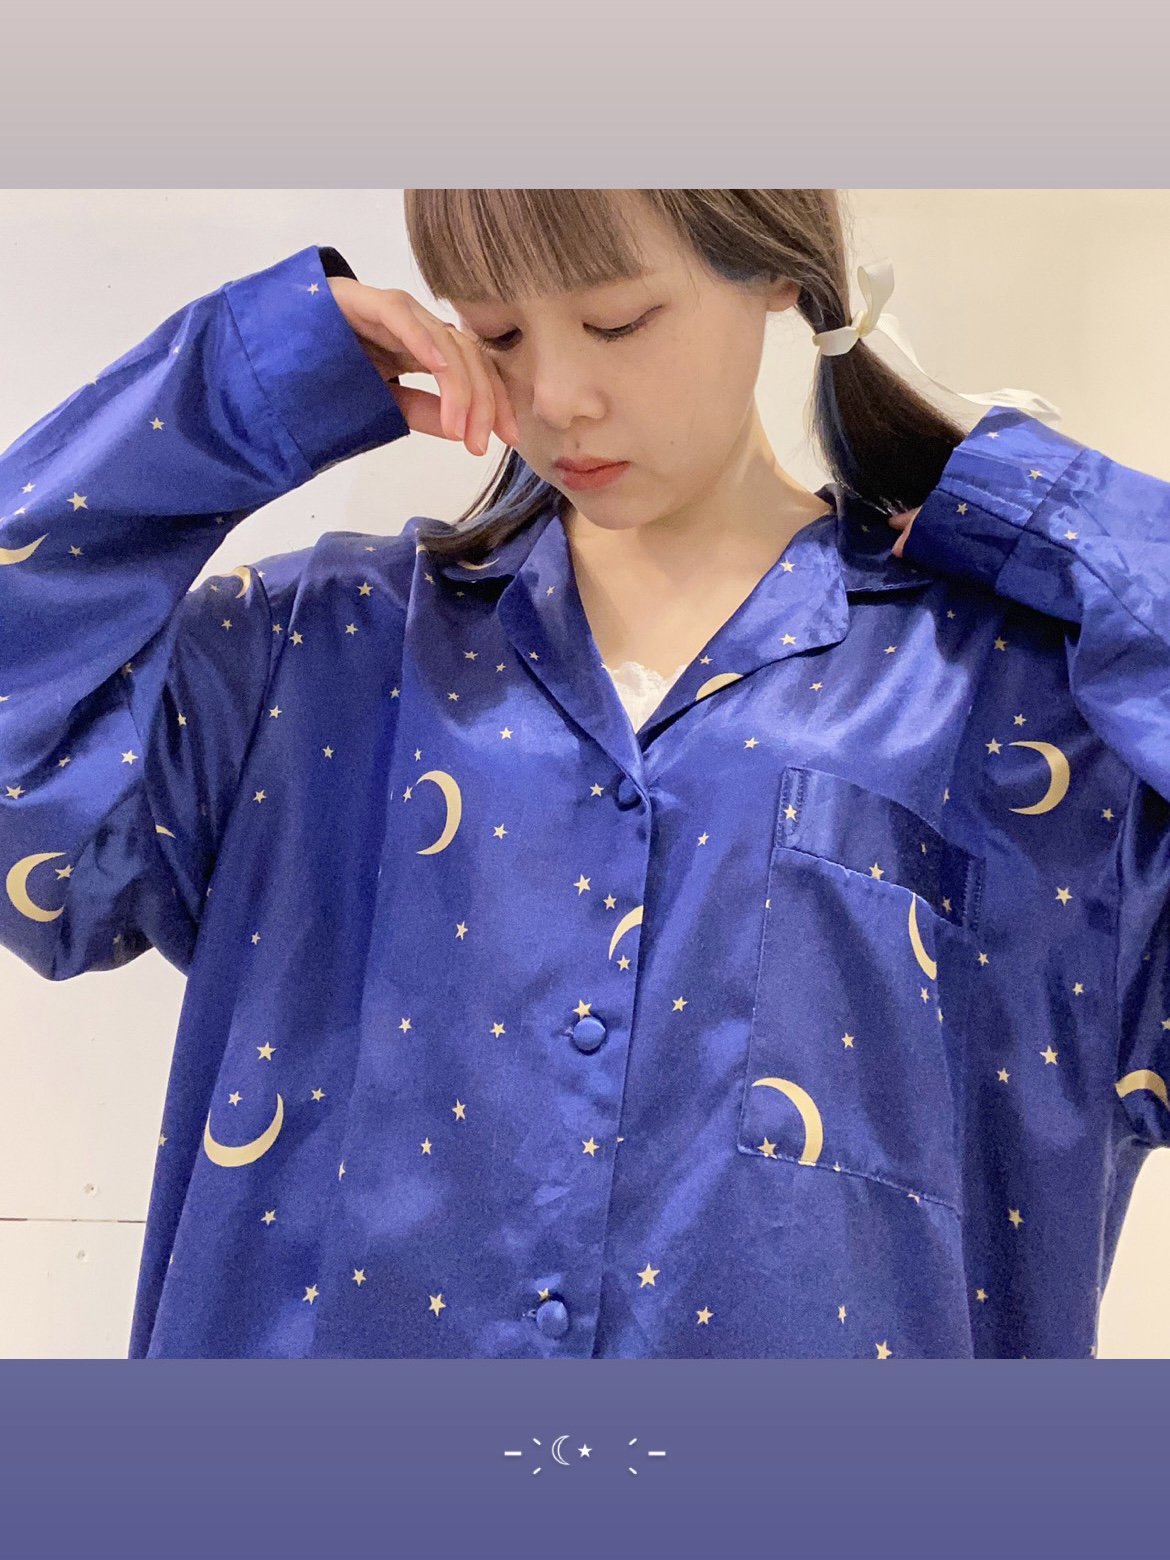 月と星のパジャマ